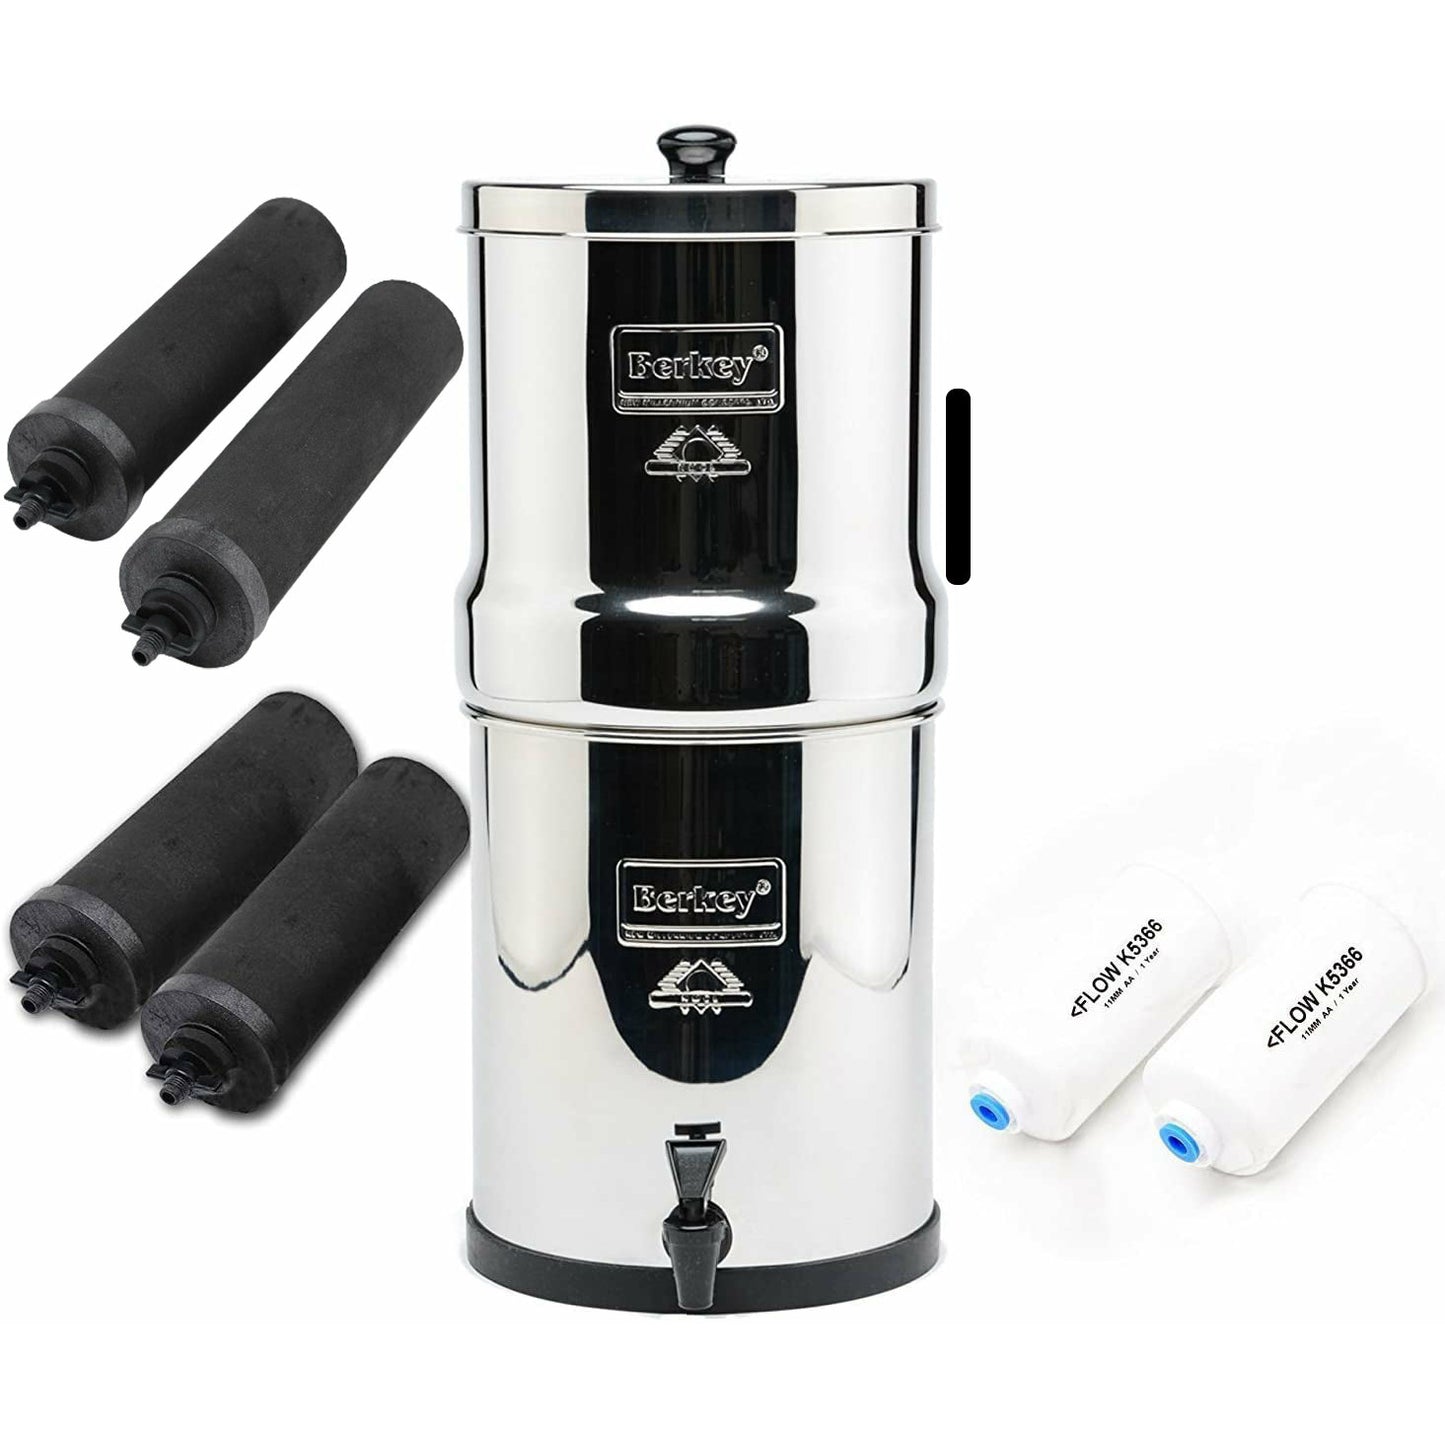 Crown Berkey Water Filter System Includes 2 Black Berkey Filters